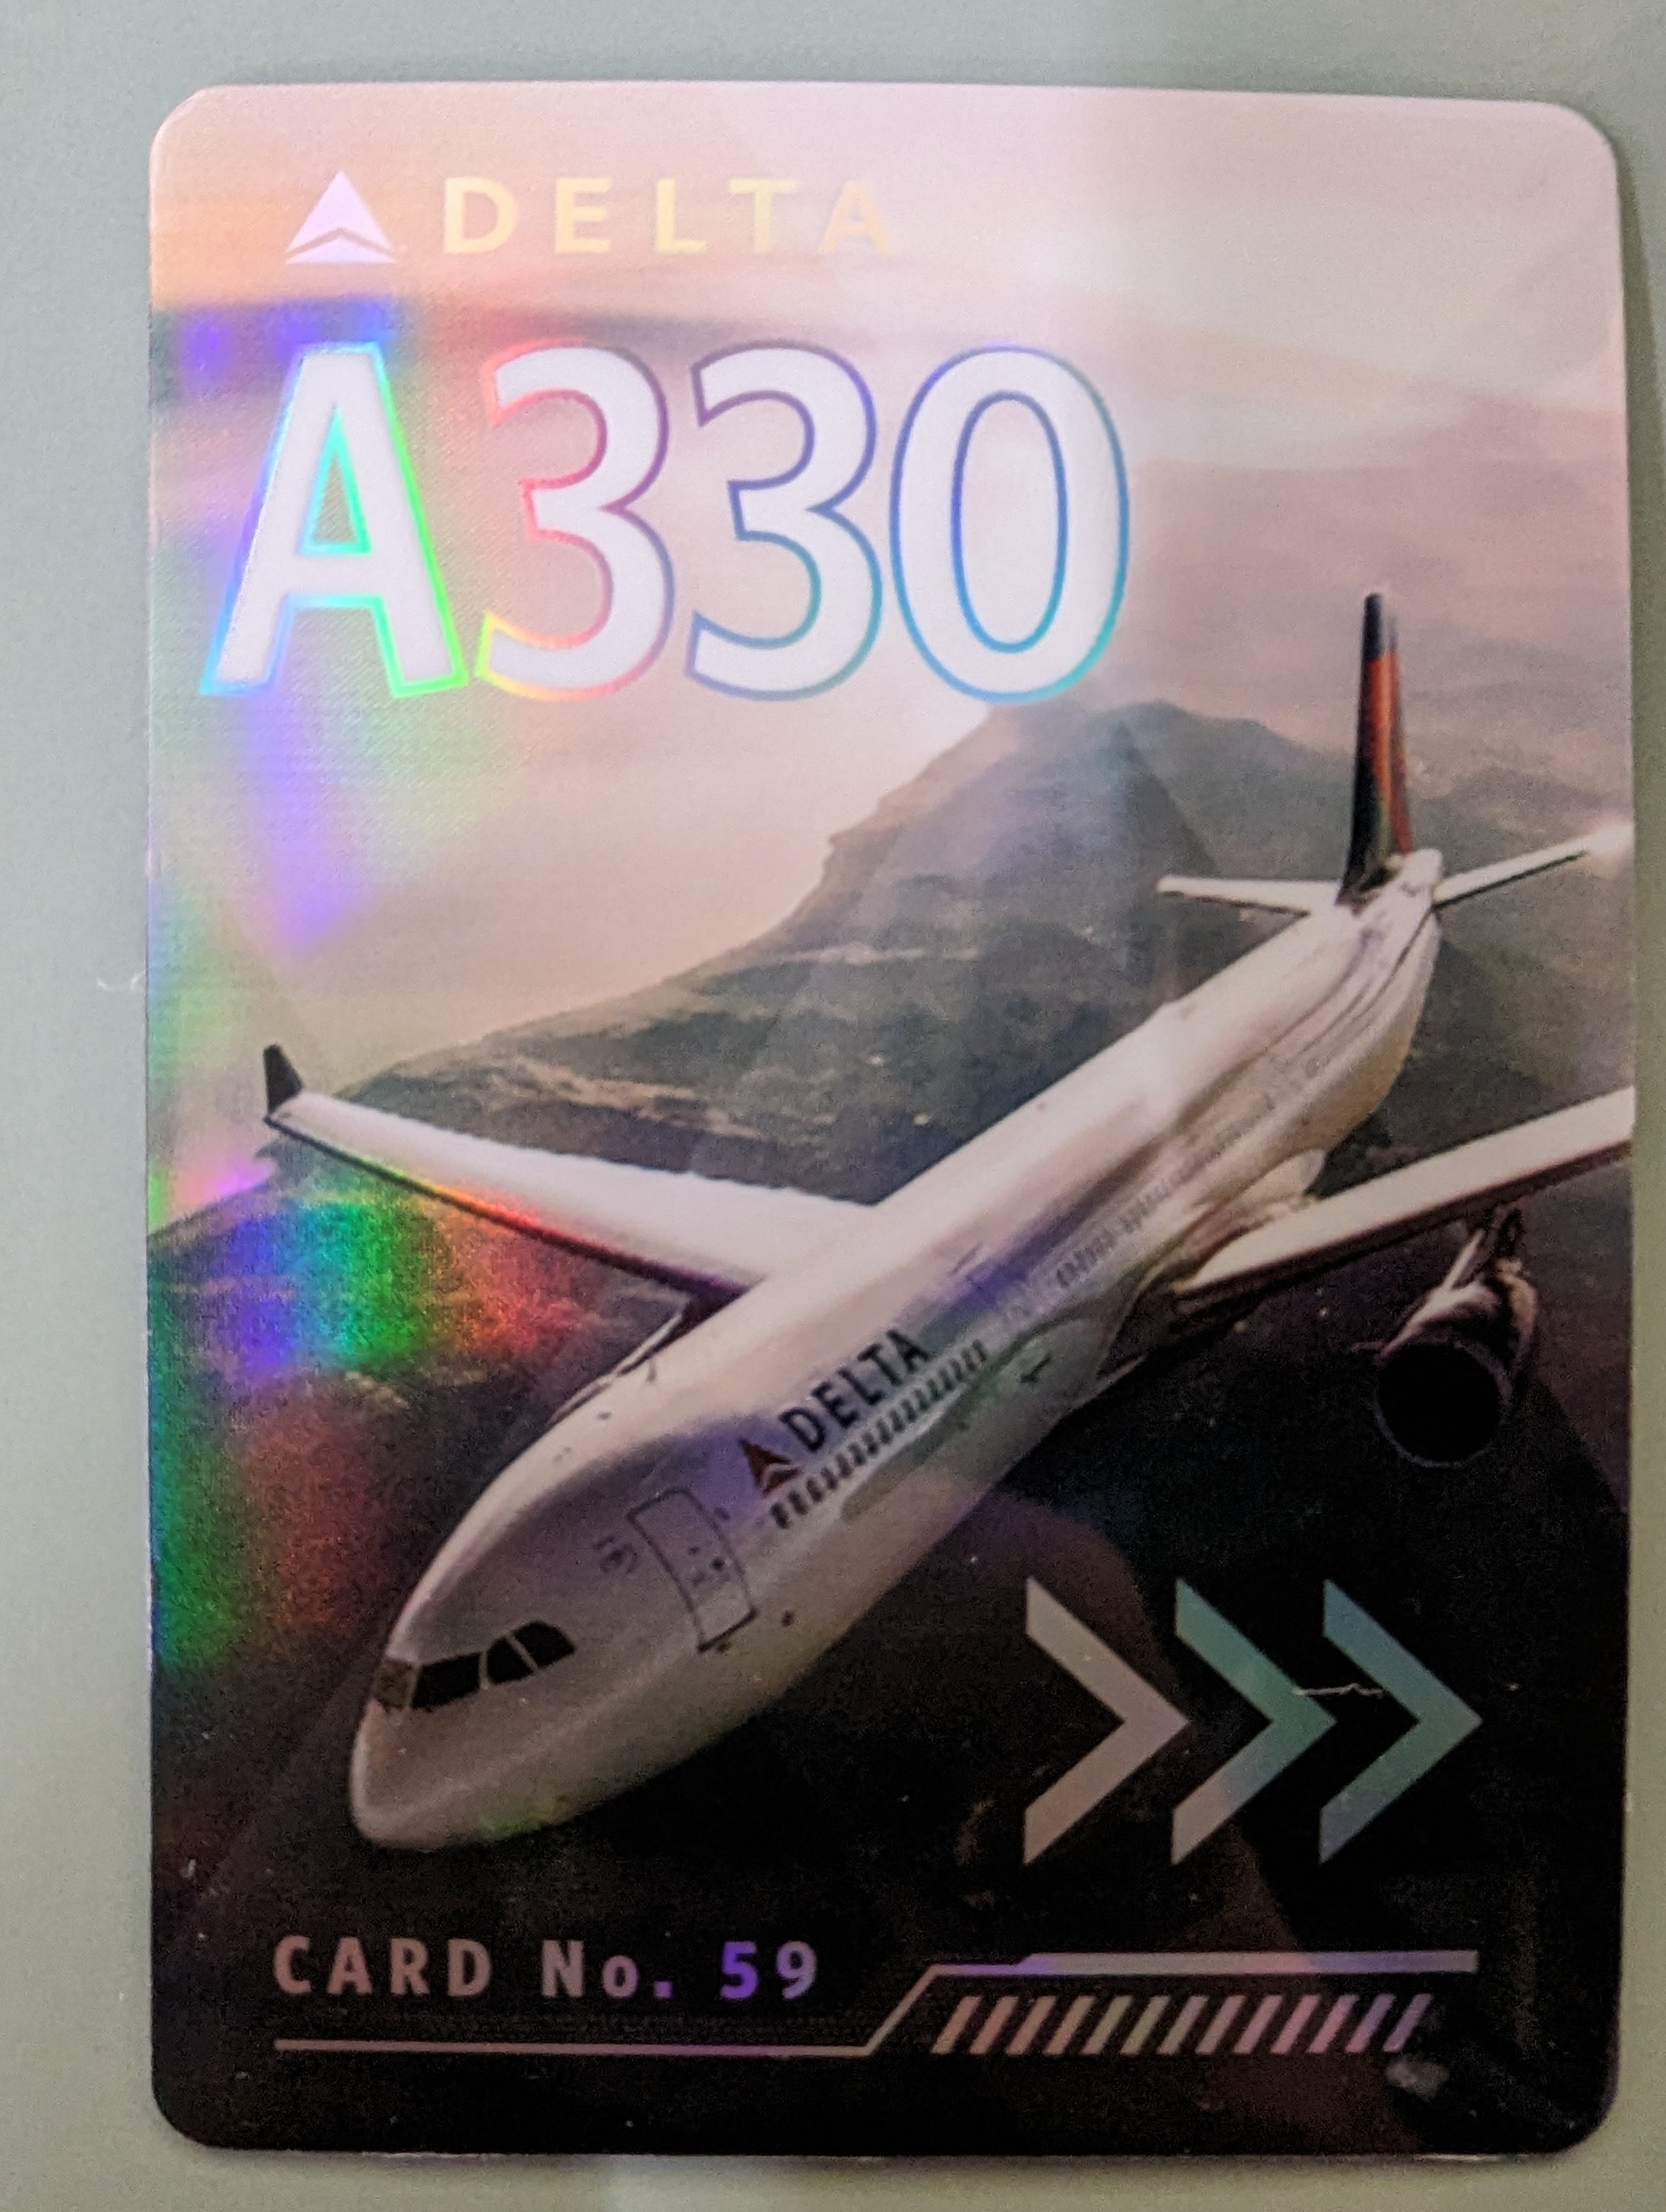 2016 Card #59 A330